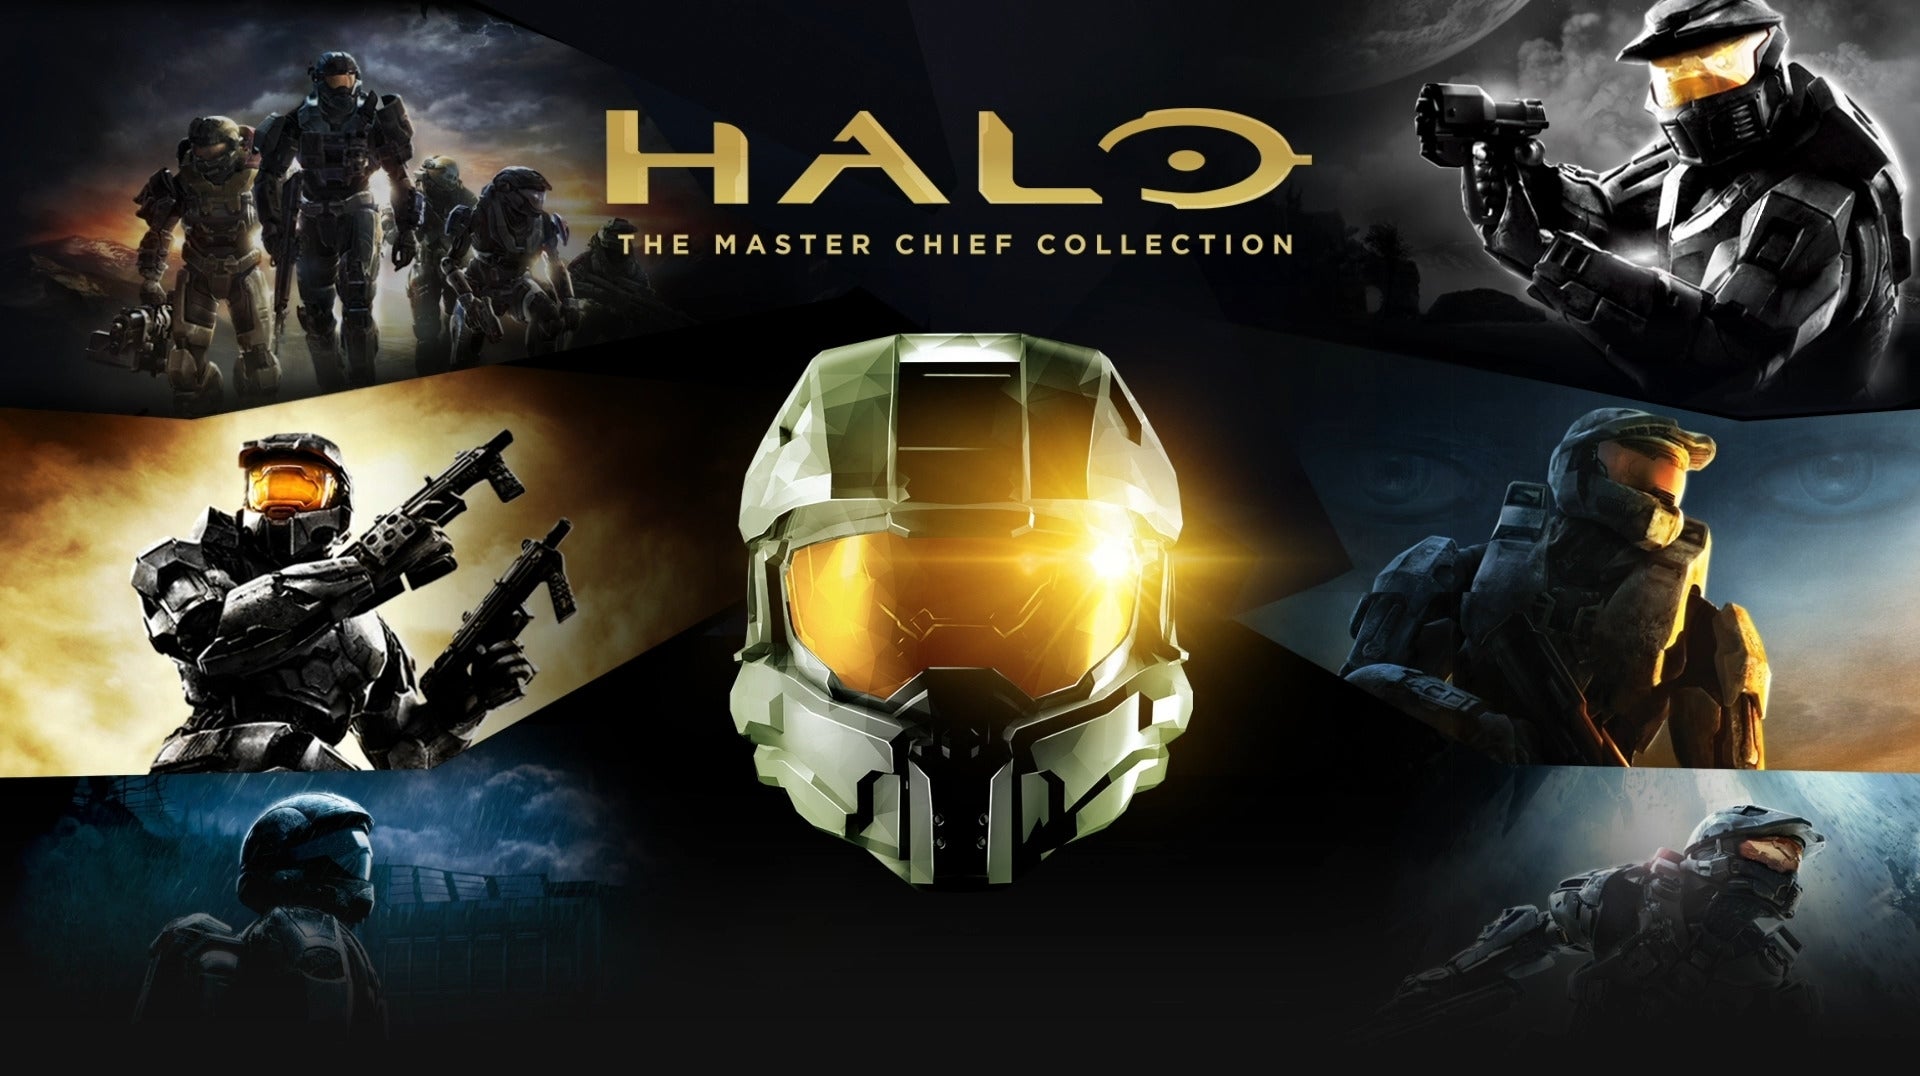 Bilder zu Halo 4 kommt nächste Woche auf den PC - als Teil der Master Chief Collection